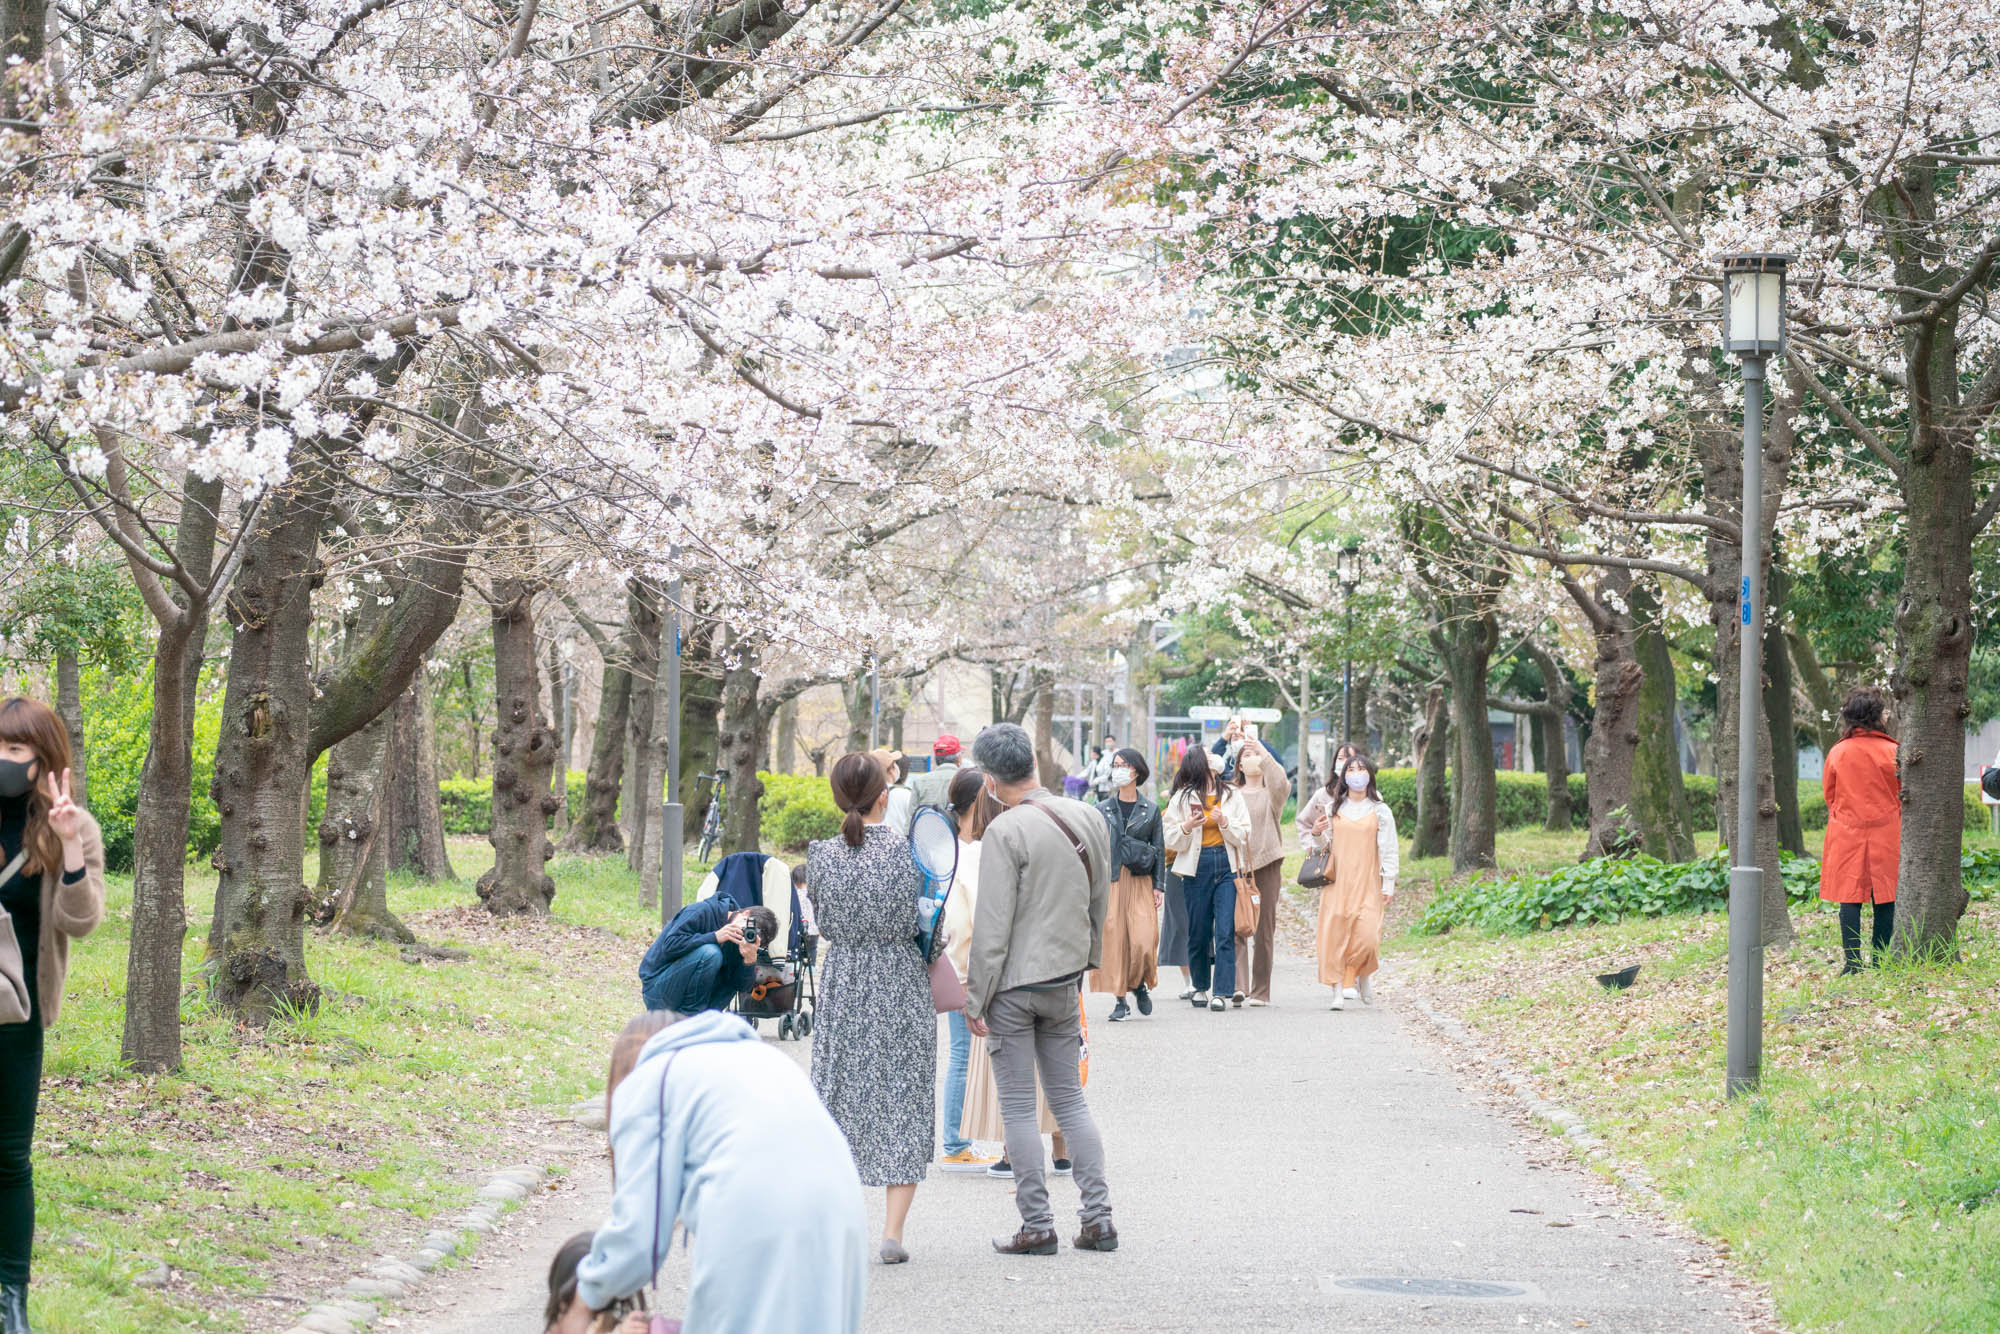 大阪城公園 桜 21年の開花情報 見ごろとアクセス方法について